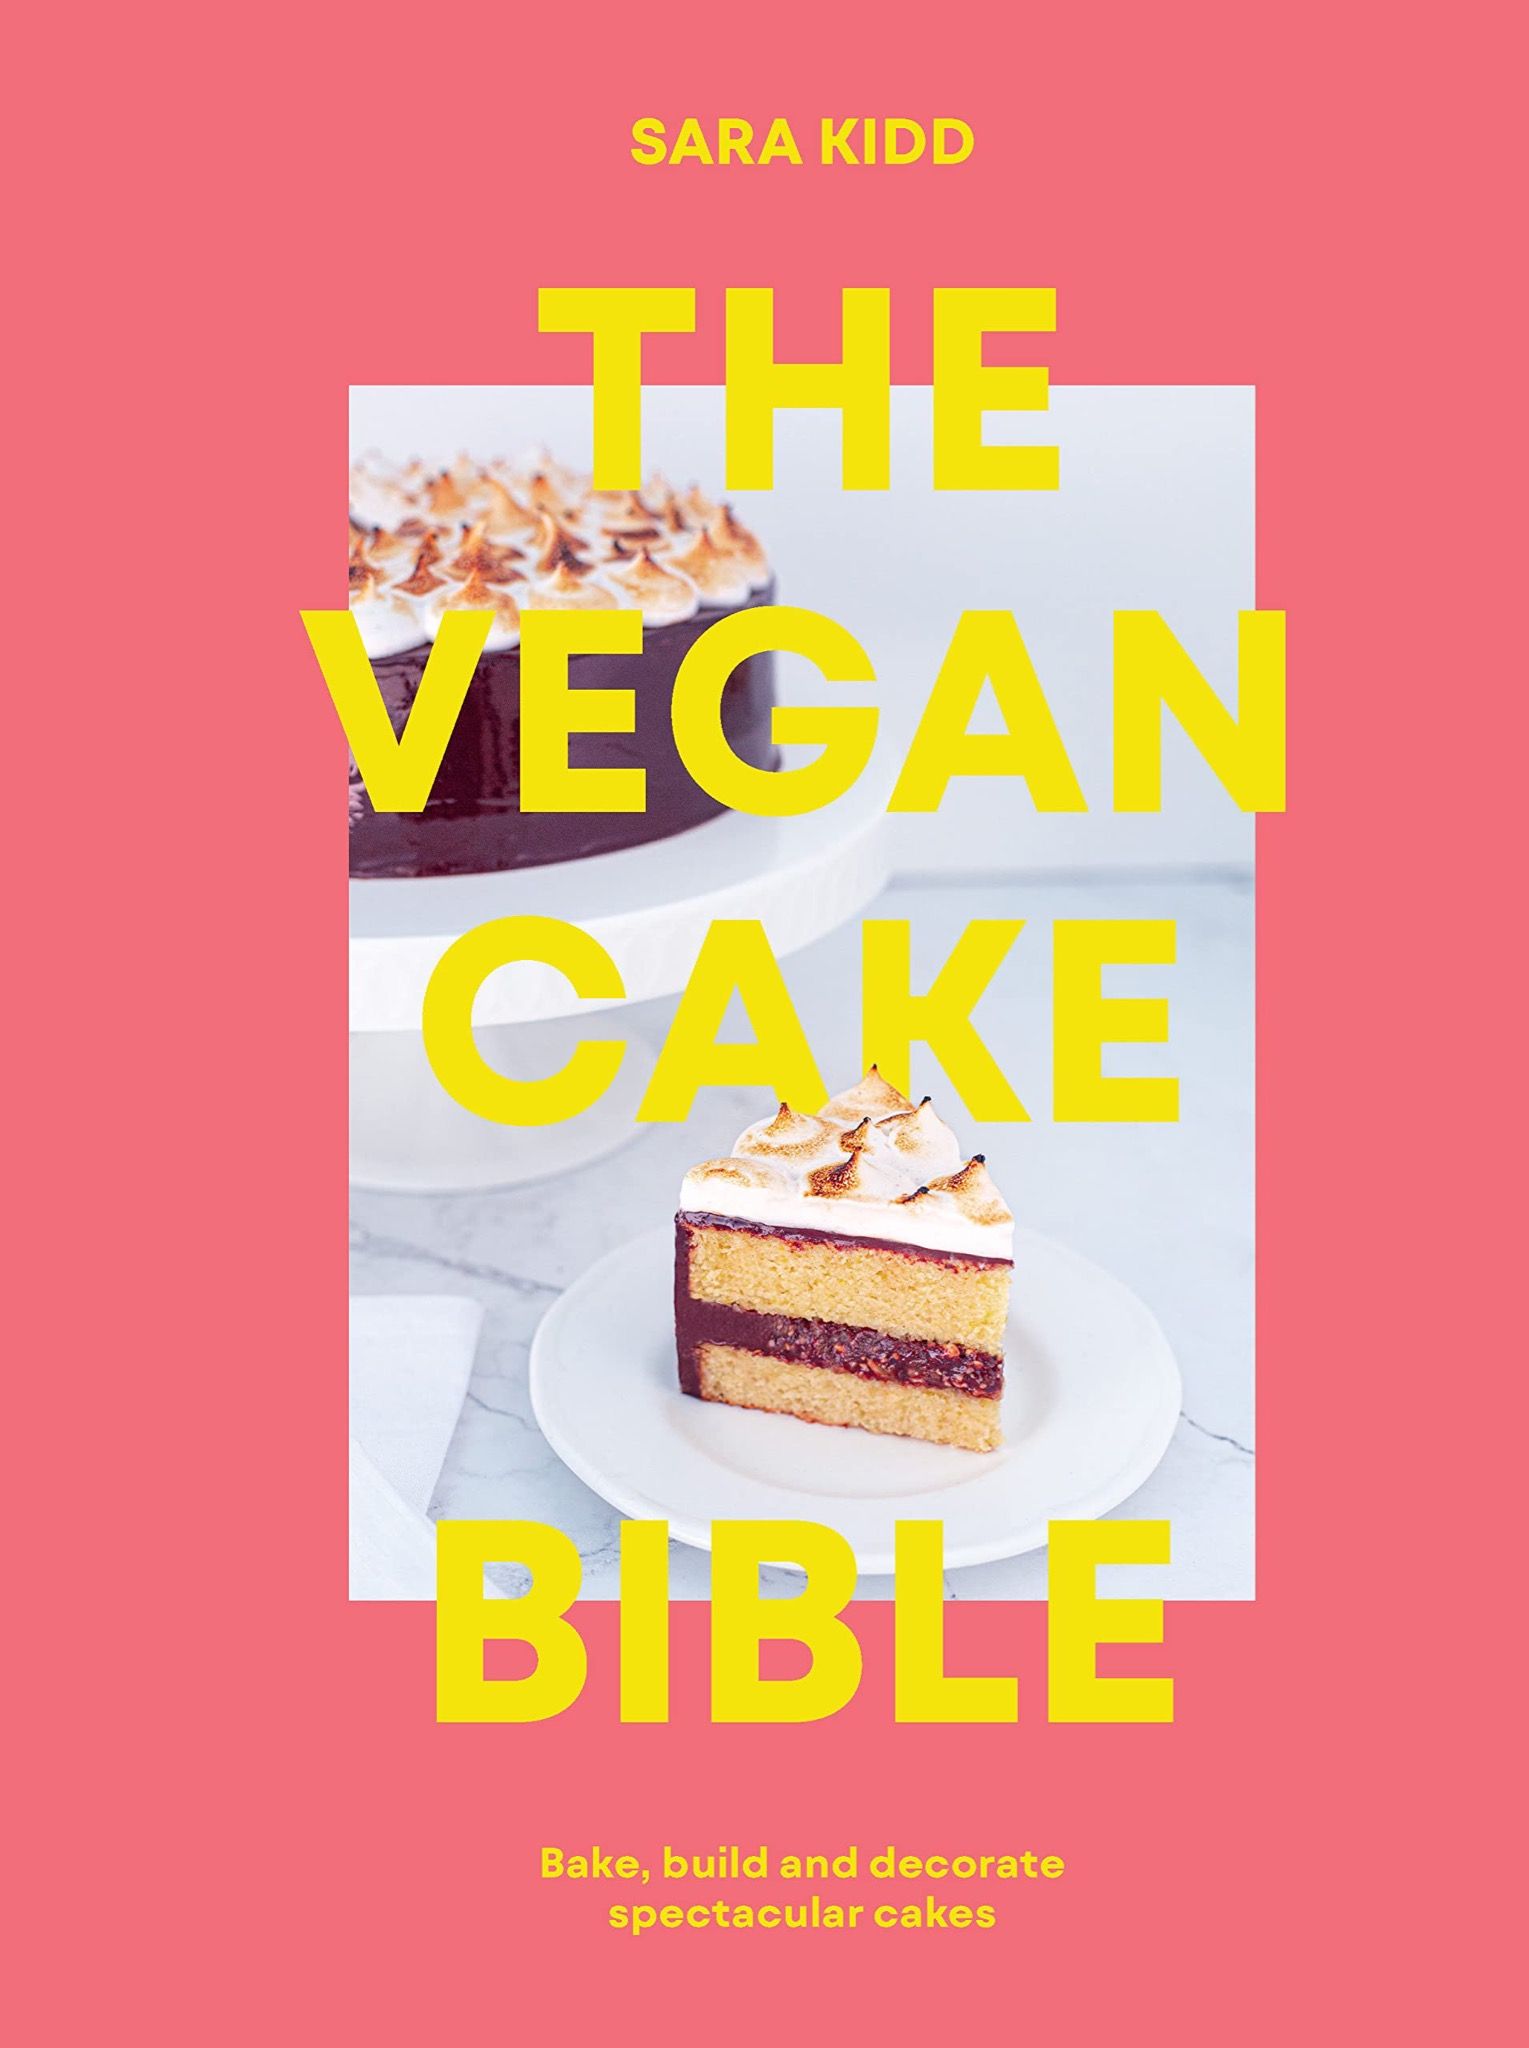  The Vegan Cake Bible : Bake, build and decorate spectacular vegan cakes 